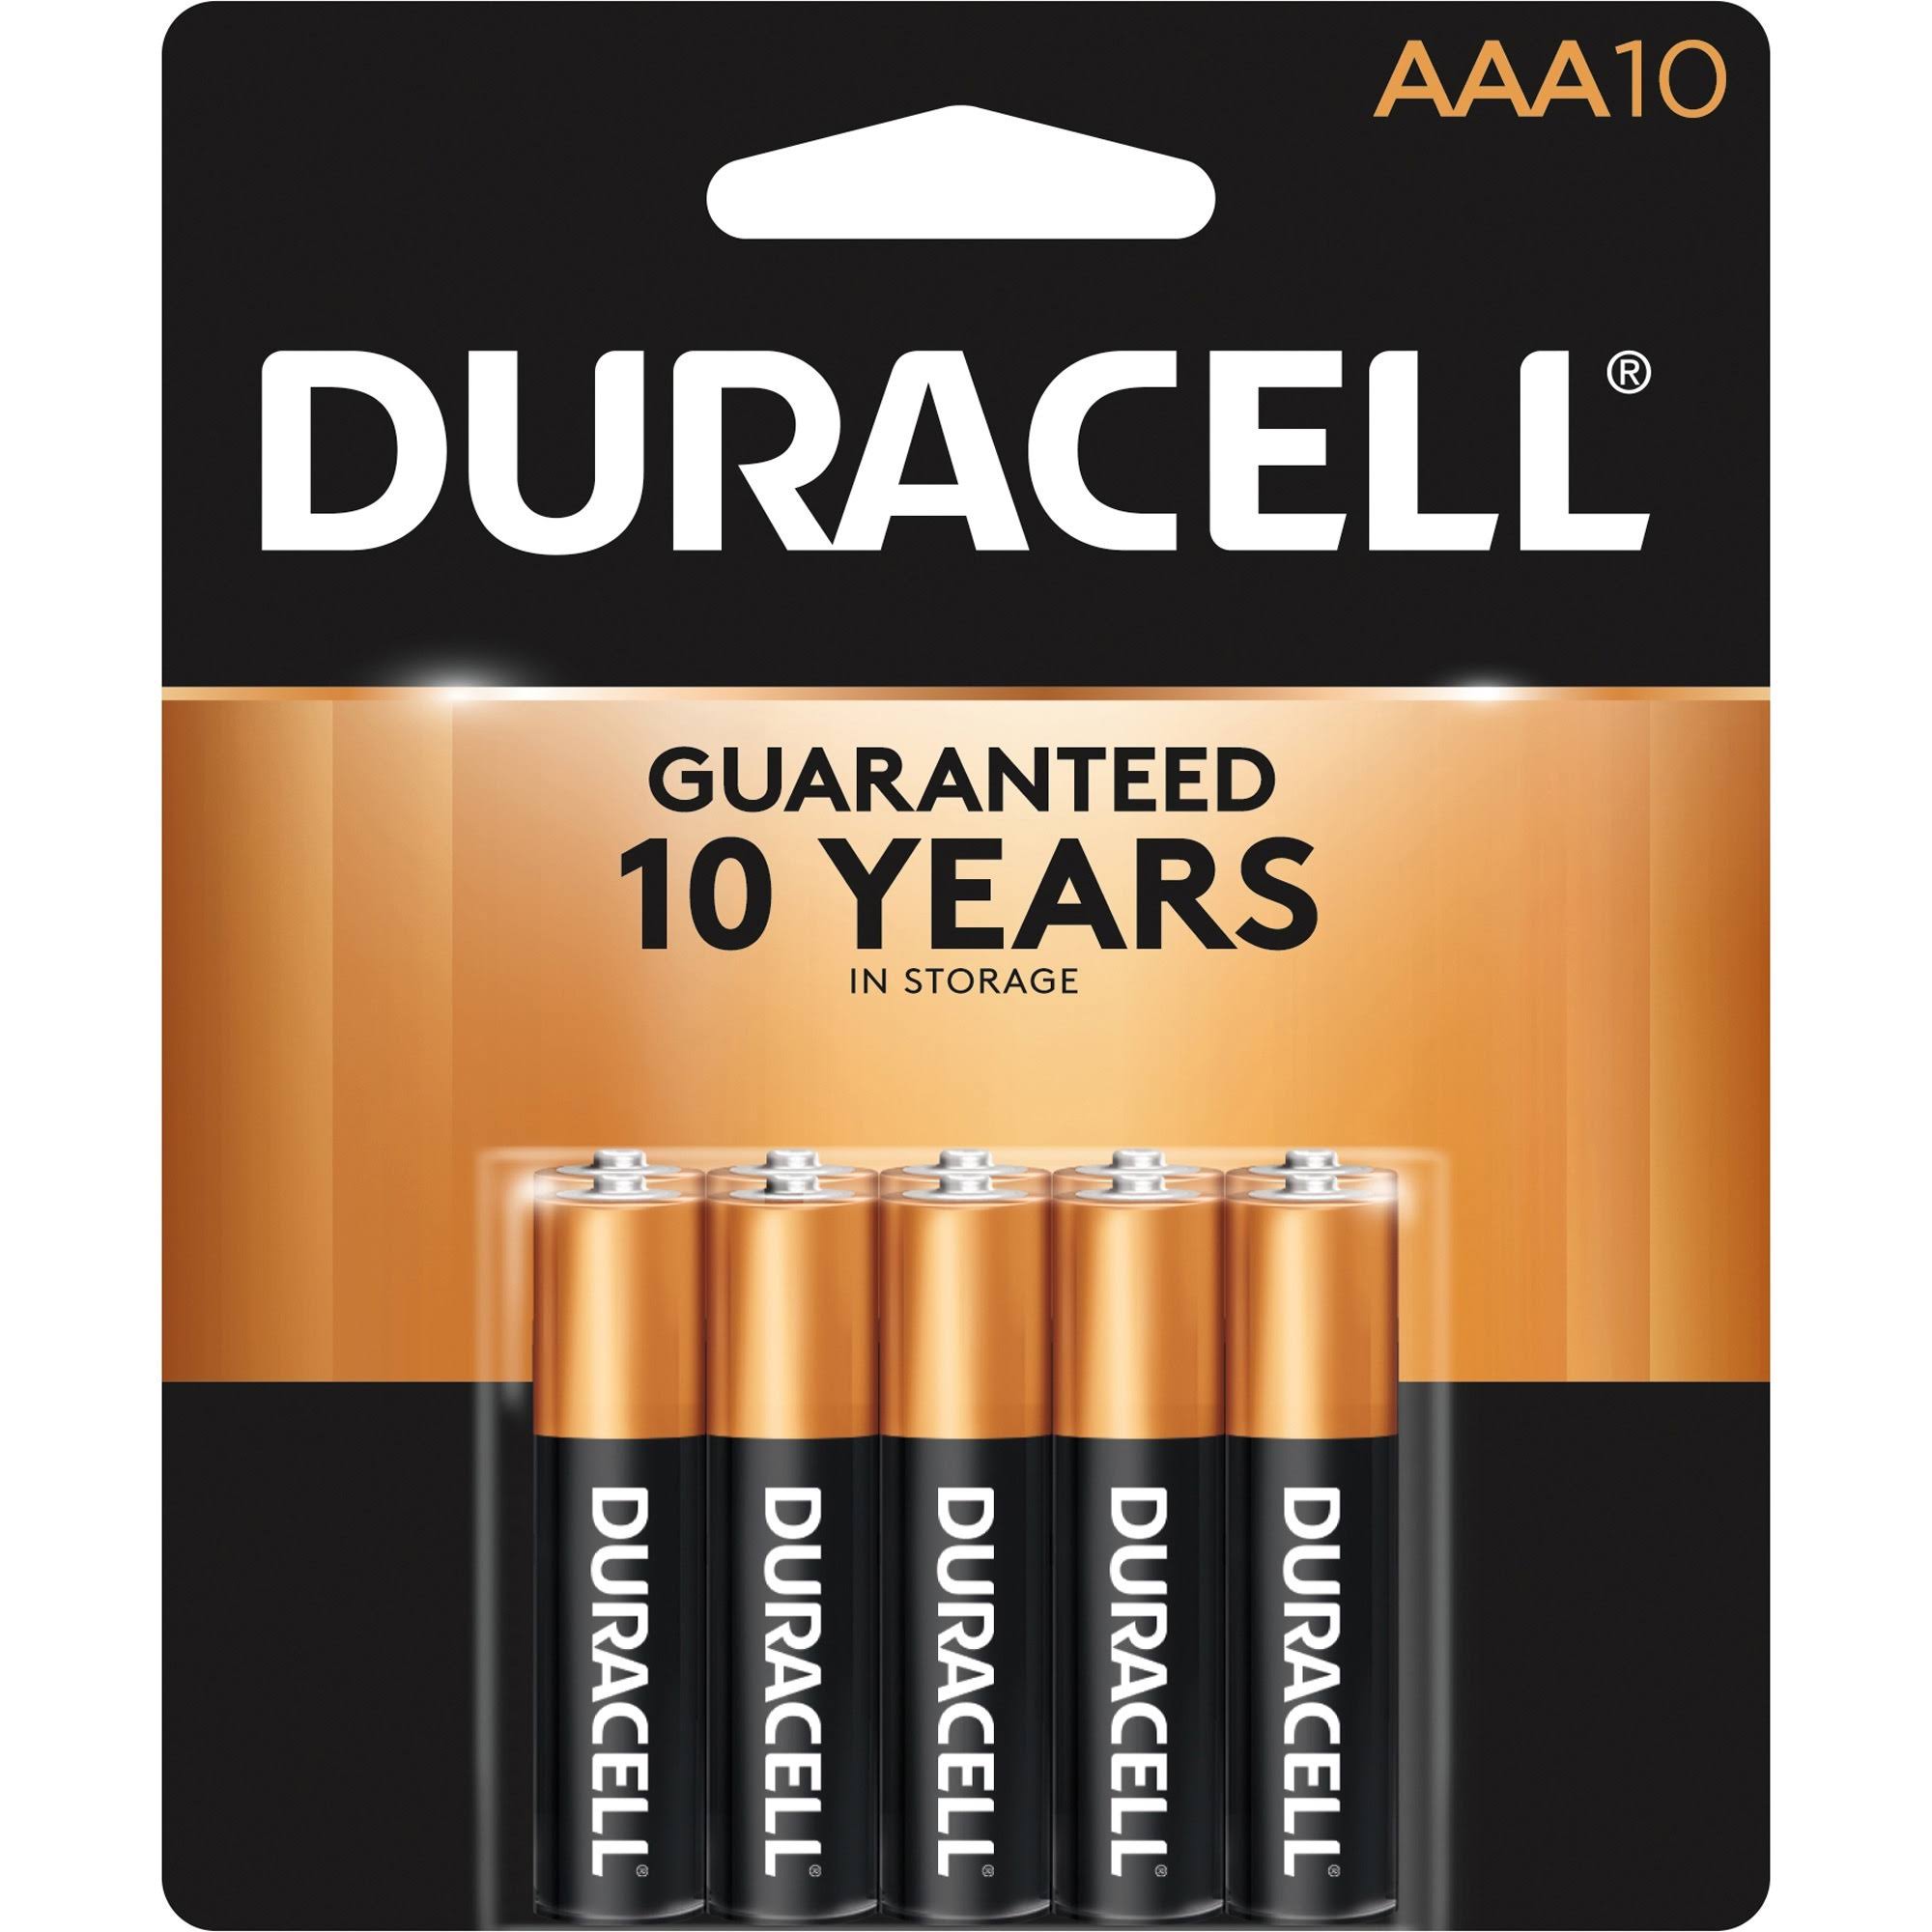 Duracell Coppertop Batteries - AAA, 10 pk